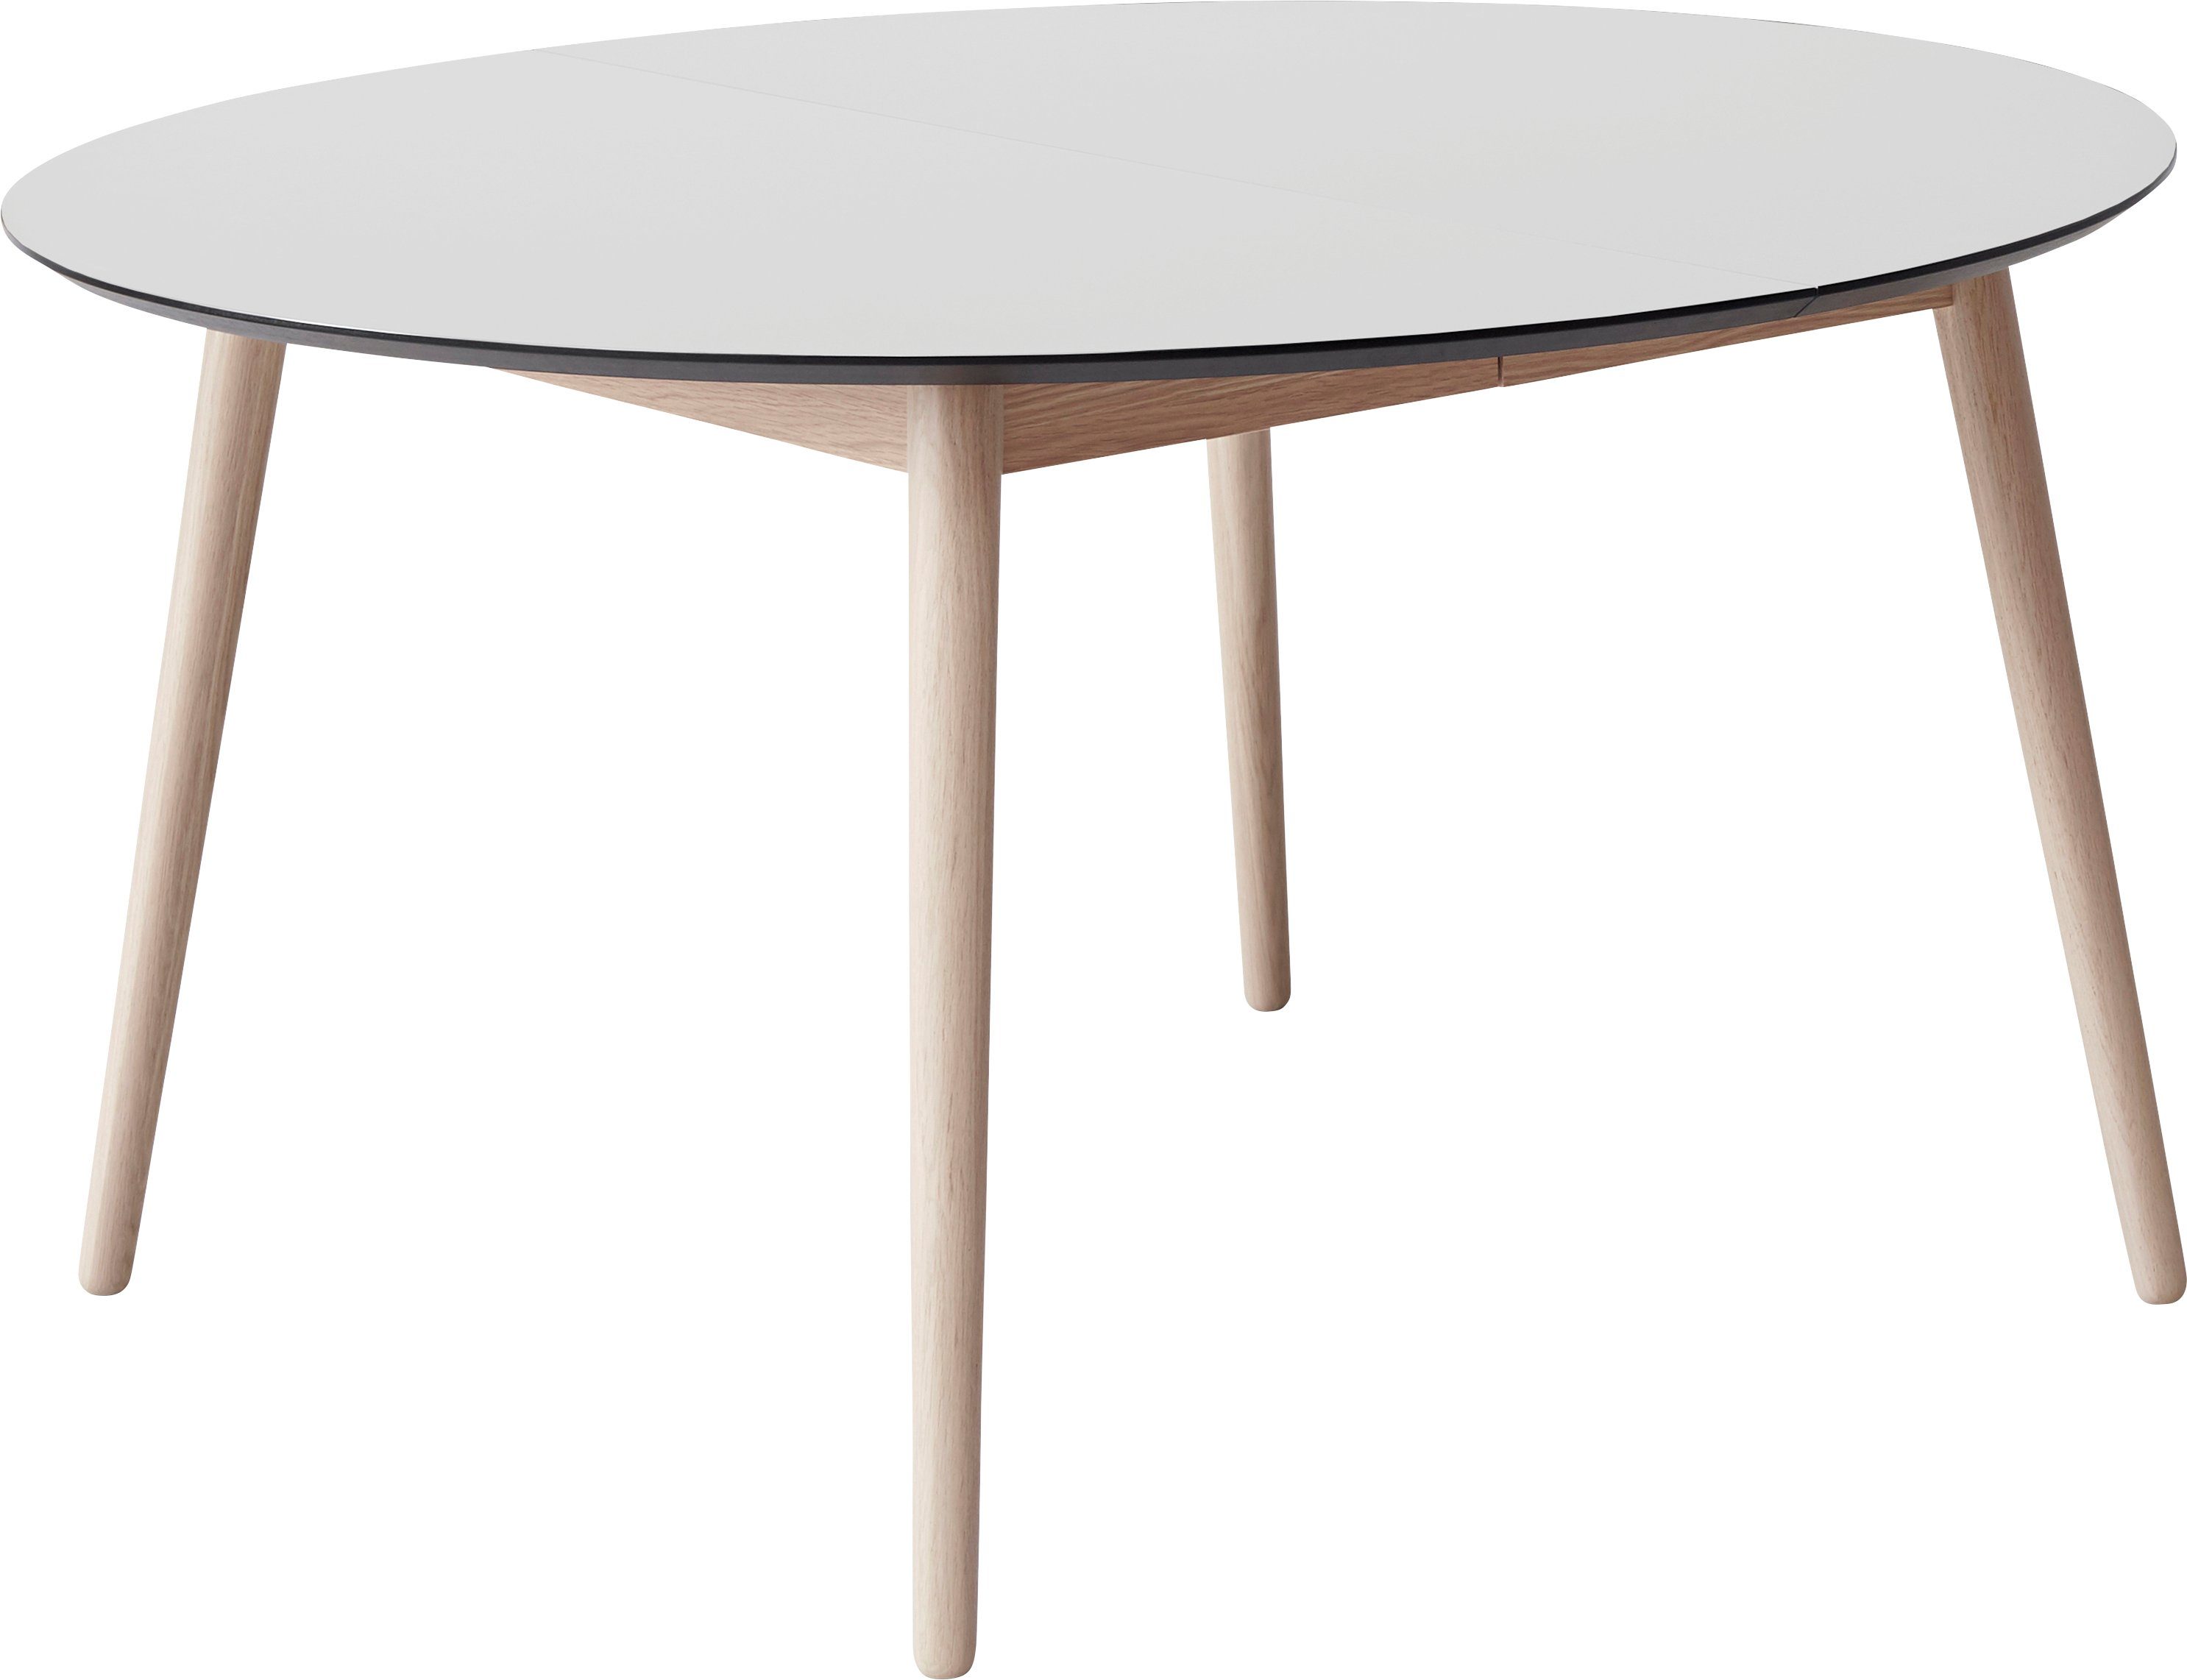 Hammel Furniture Esstisch Meza by Hammel, Ø135(231) cm, runde Tischplatte aus MDF/Laminat, Massivholzgestell Weiß